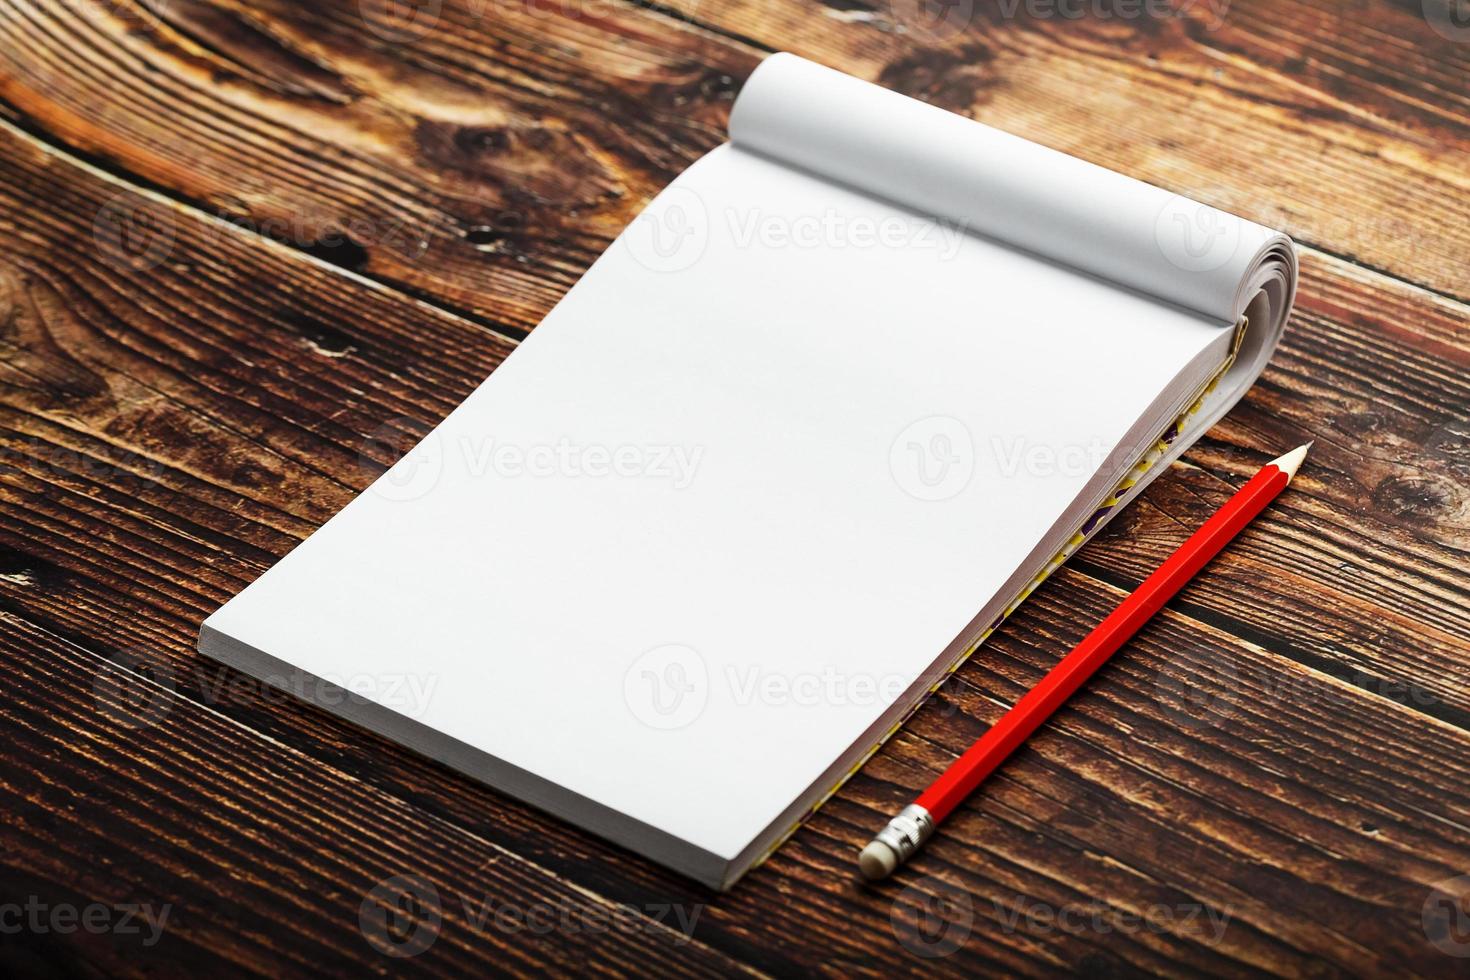 anteckningsblock med röd penna på en brun trä- tabell bakgrund, för utbildning, skriva mål och gärningar foto